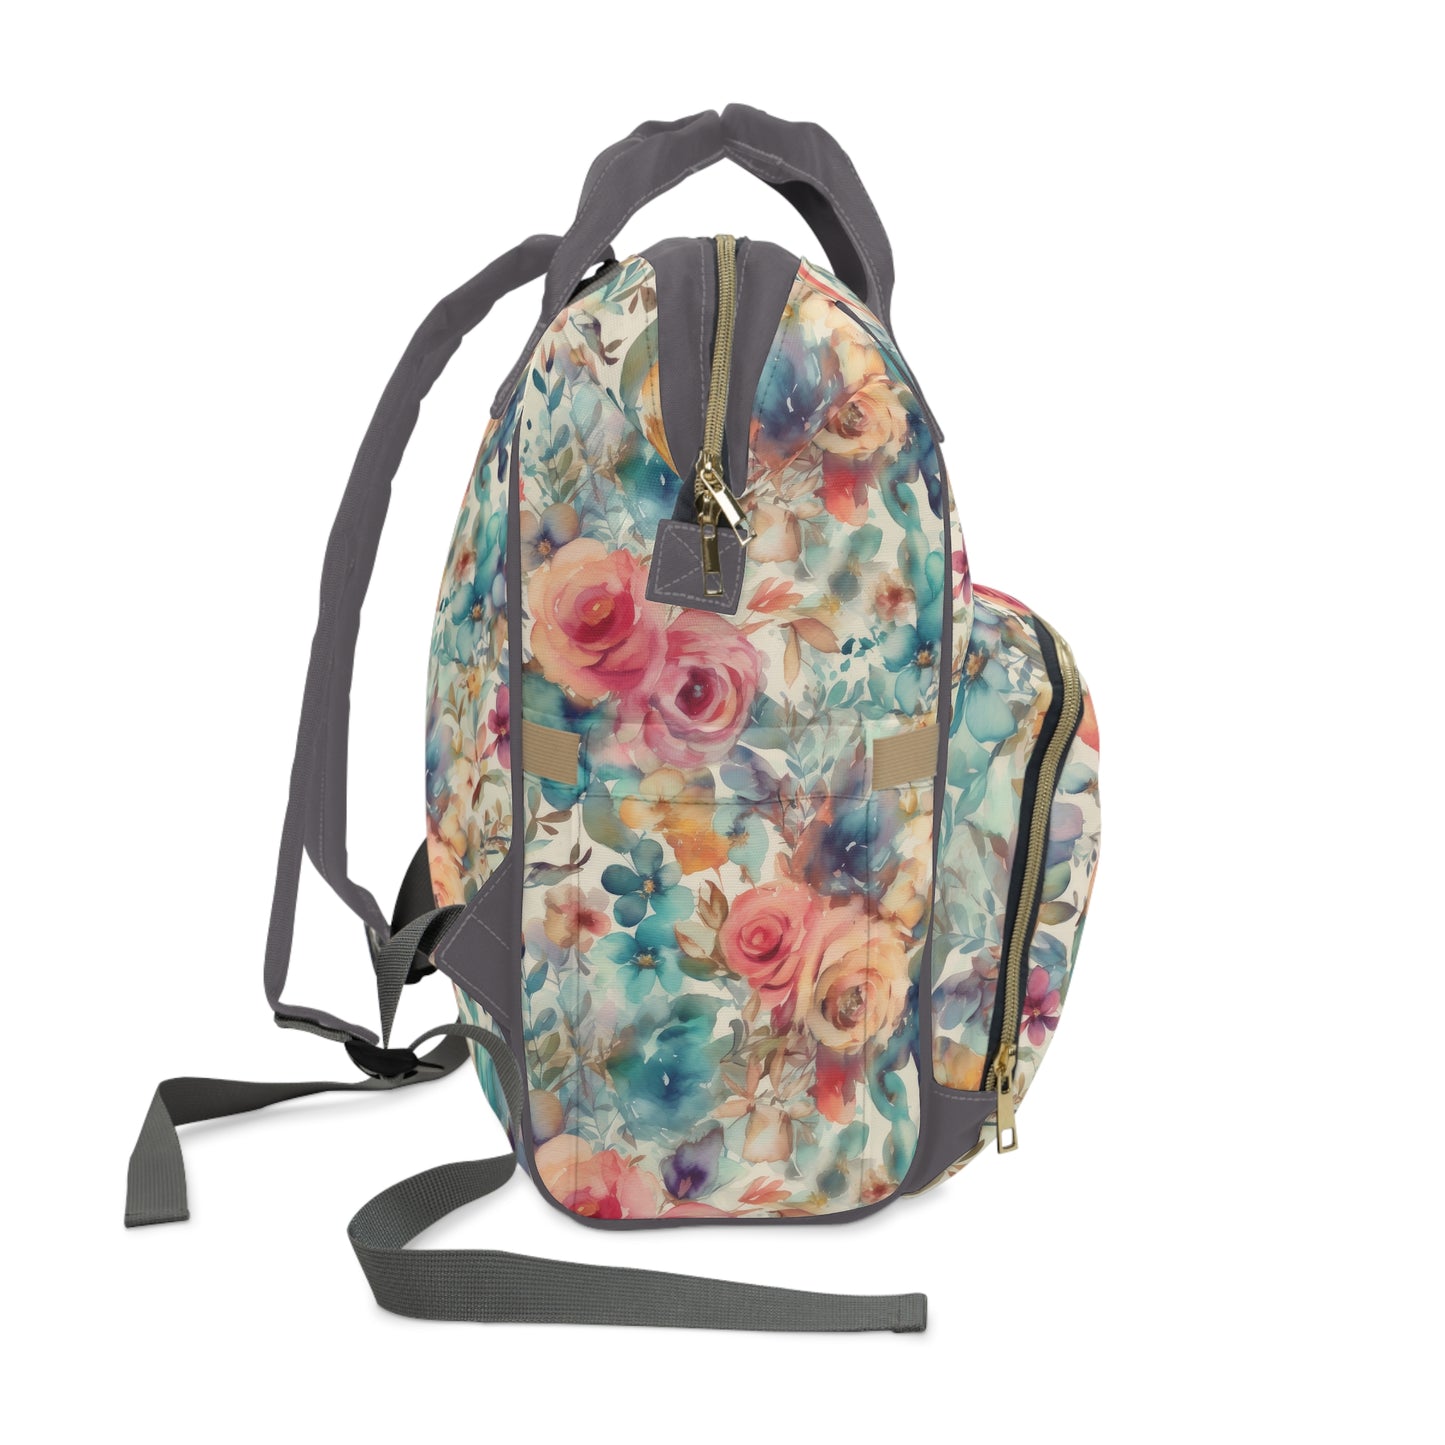 Seaside Blooms Multifunctional Diaper Backpack